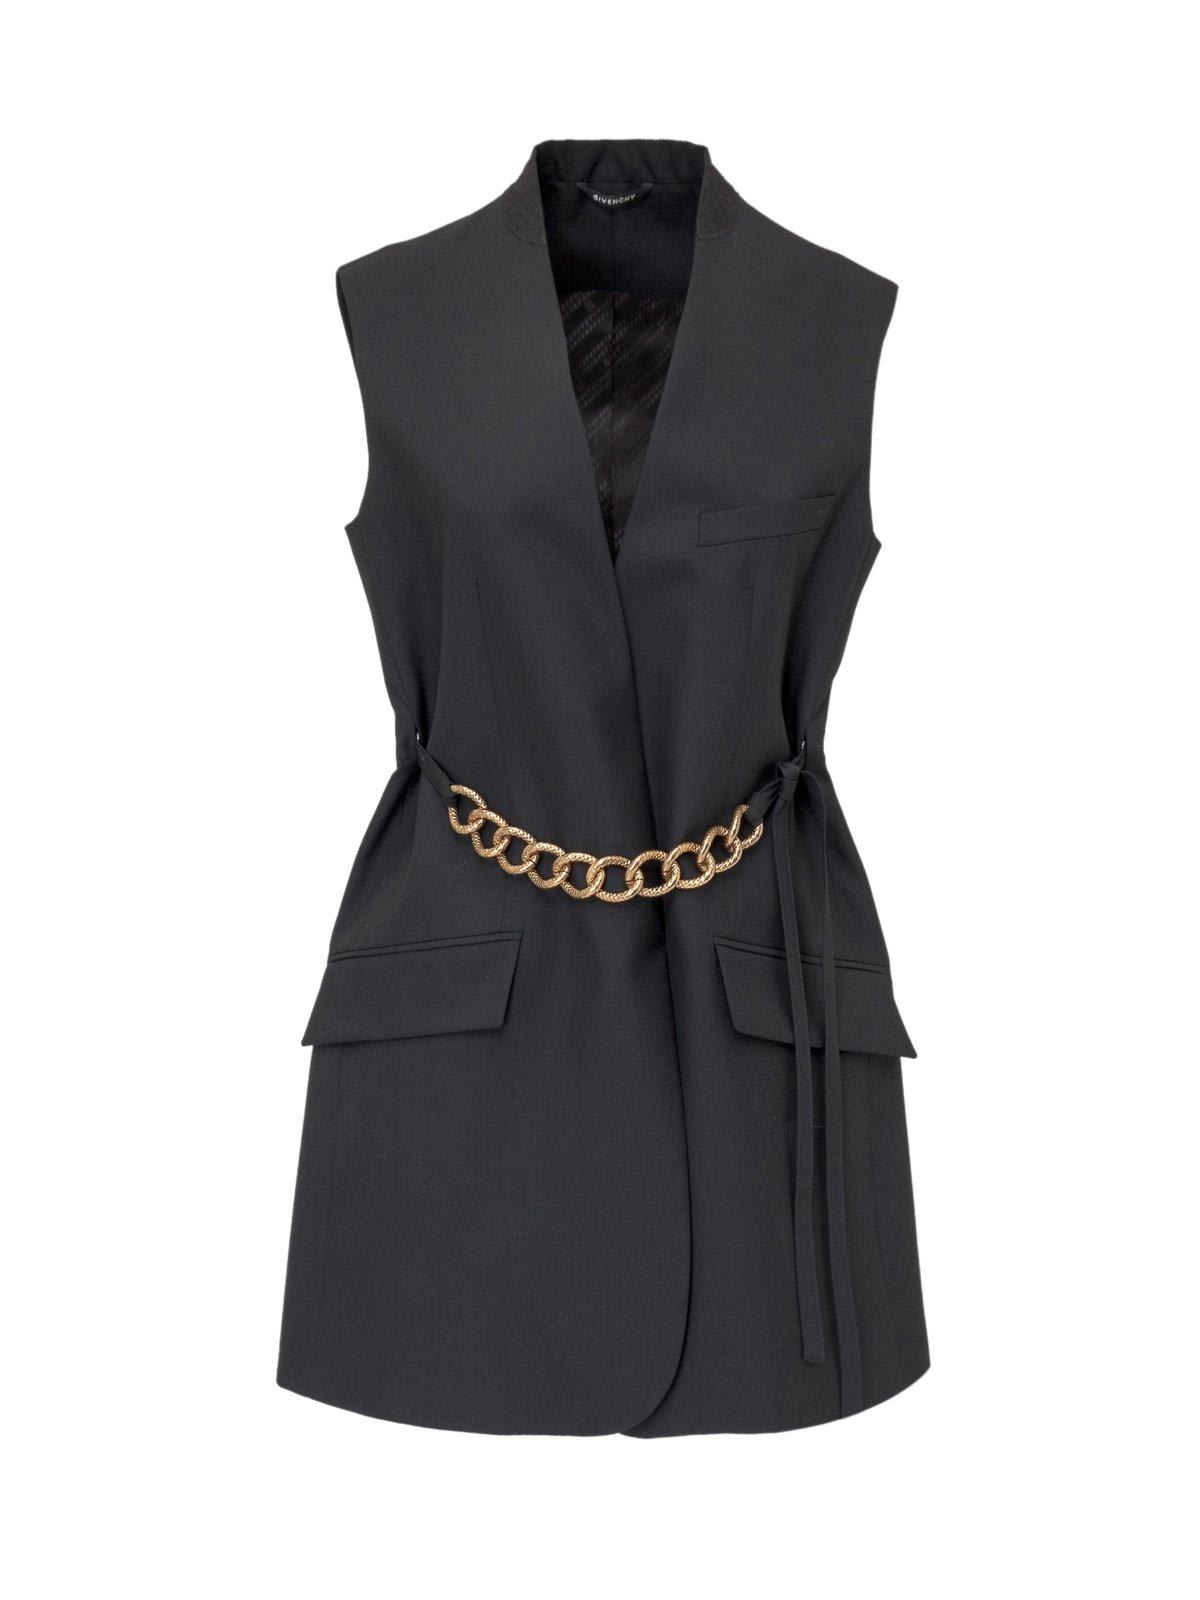 Givenchy Chain Embellished Sleeveless Jacket